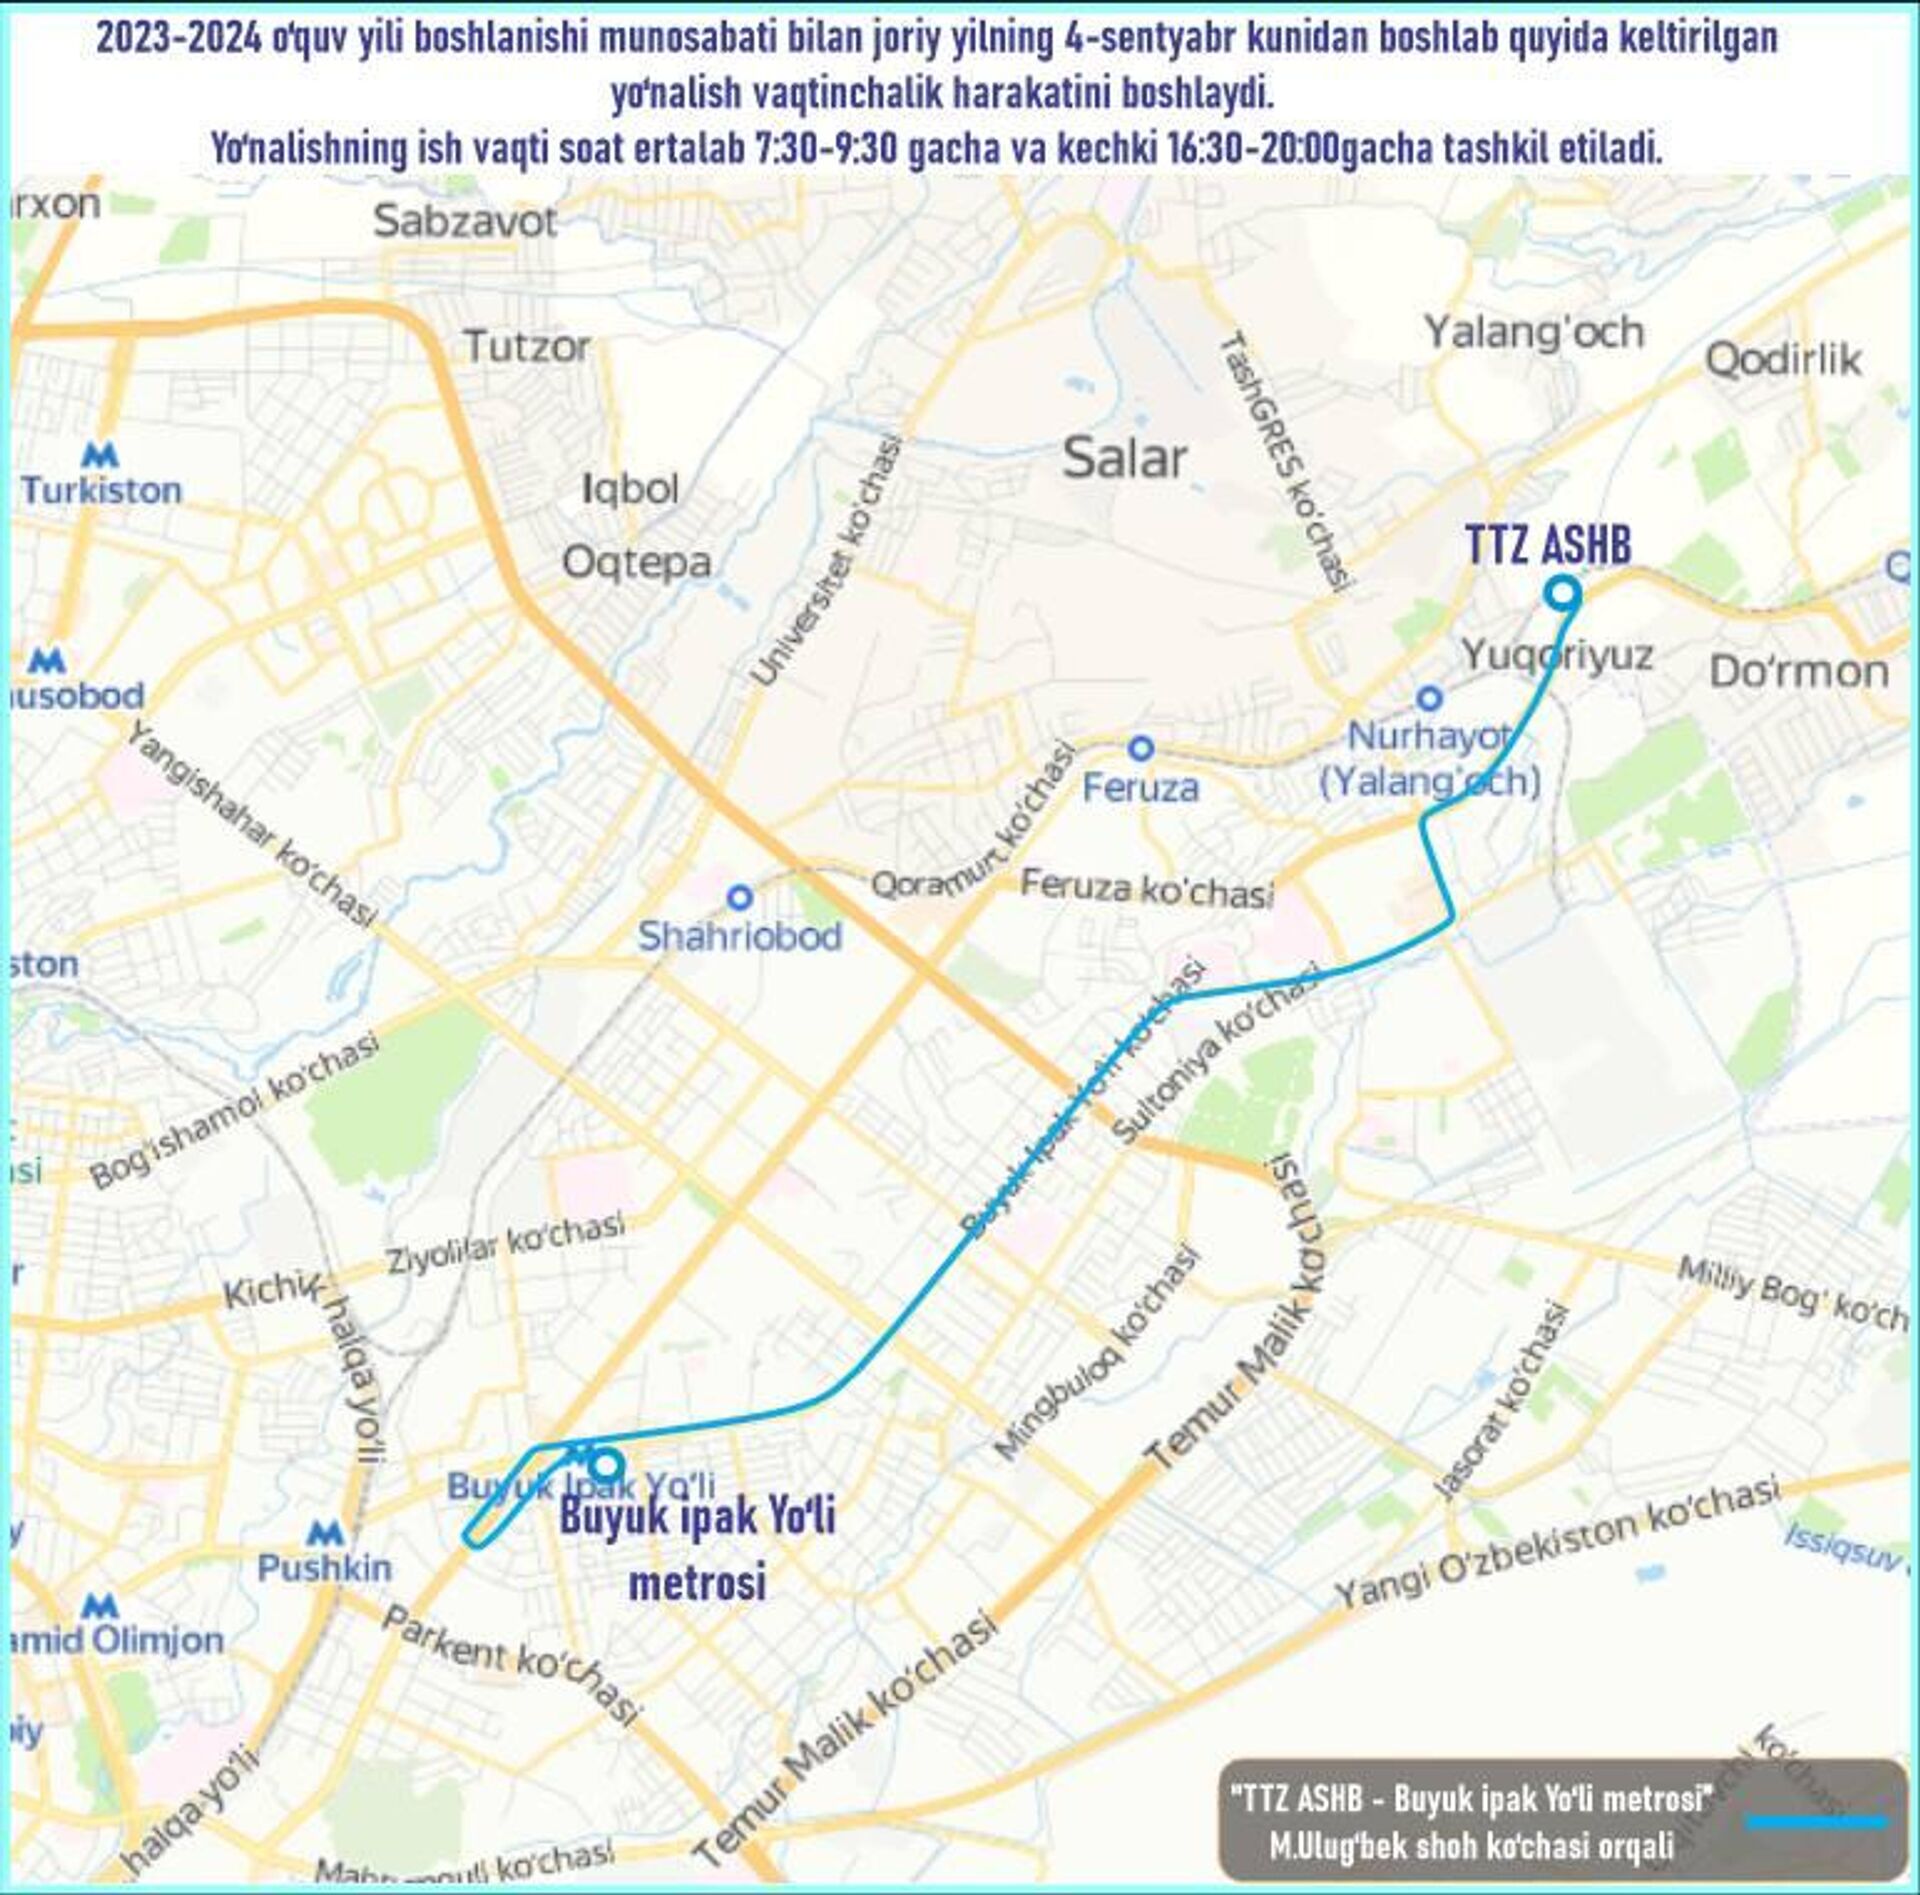 Временные подвозные автобусы до станций метро будут работать по графику: 7.30-9.30 и 16.30-20.00 - Sputnik Узбекистан, 1920, 04.09.2023